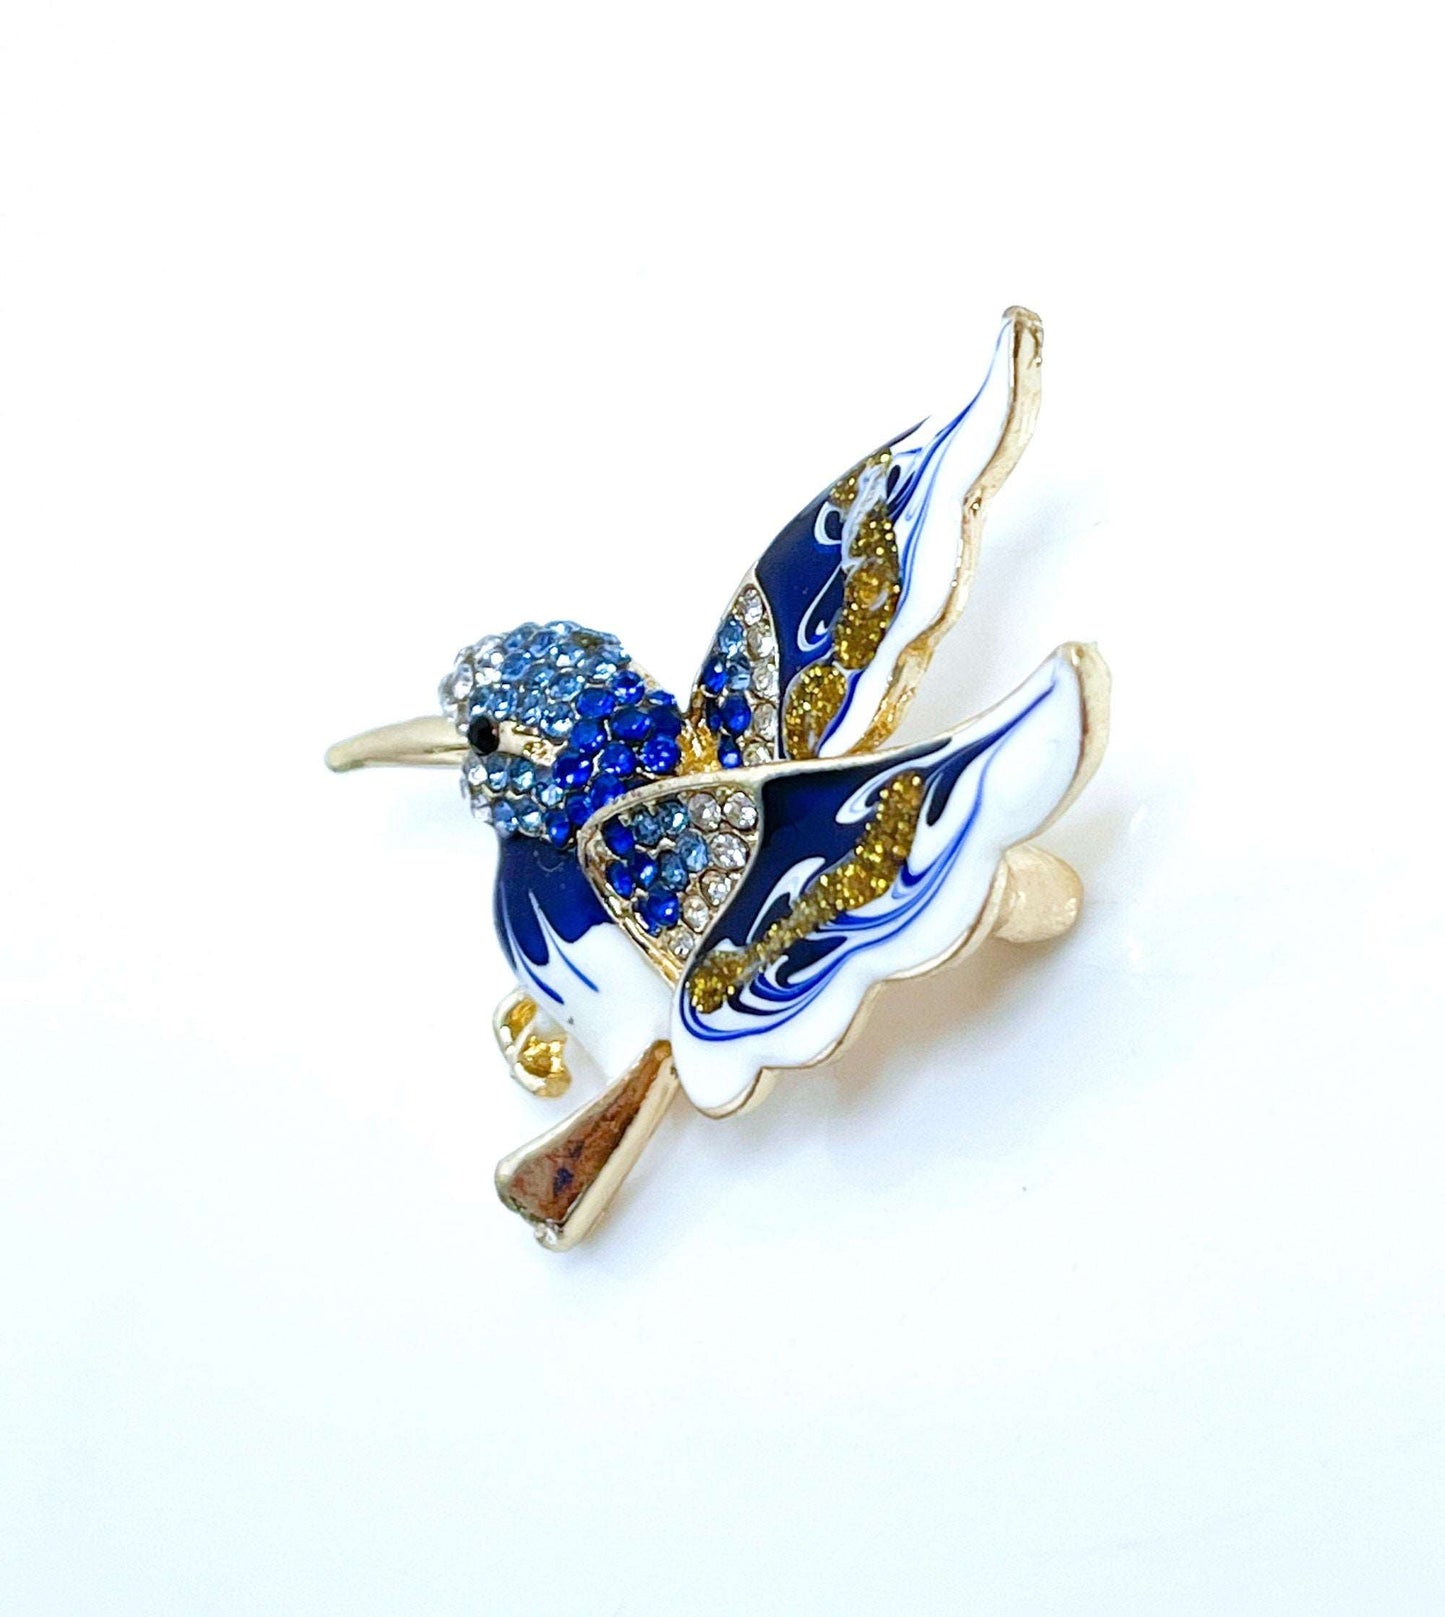 Cute Hummingbird Brooch | Gift for Bird Lovers | Blue and Gold Hummingbird | Cute Bird Pin